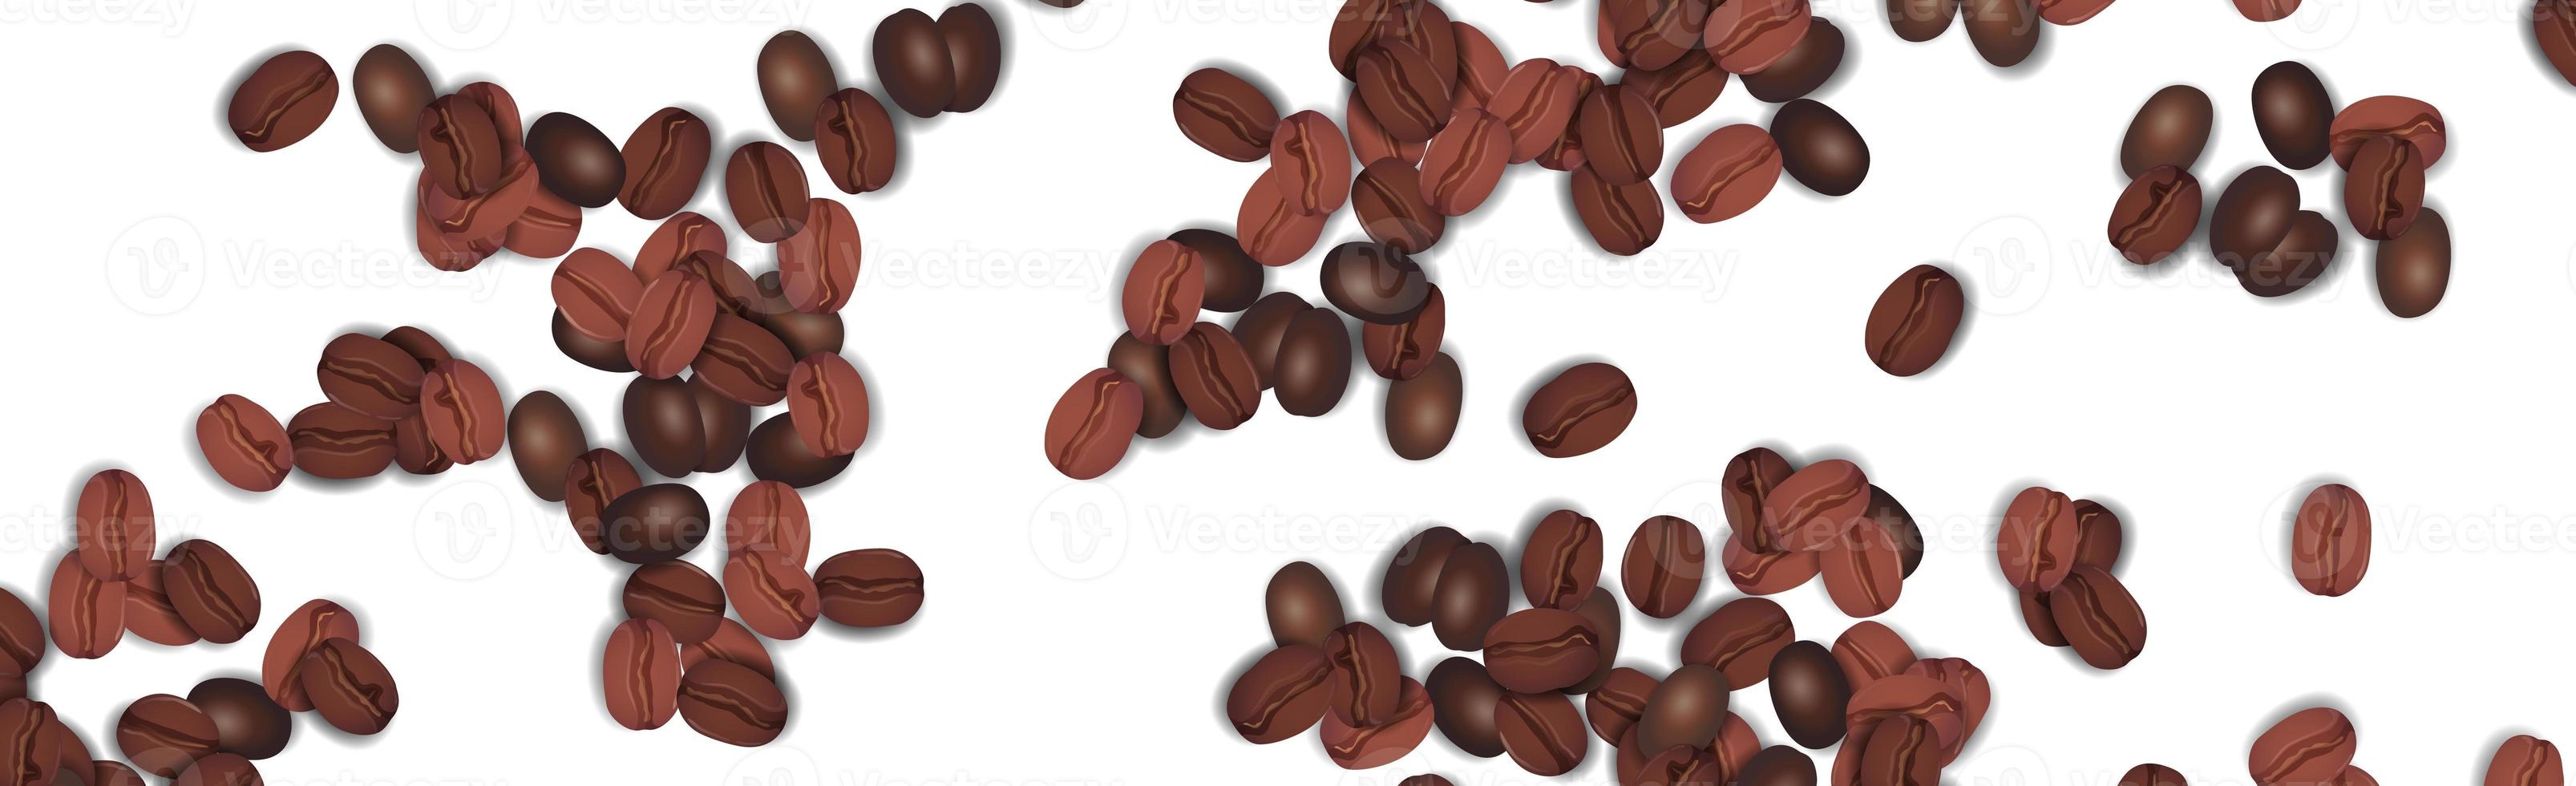 realistiska kaffebönor på vit bakgrund - vektor foto